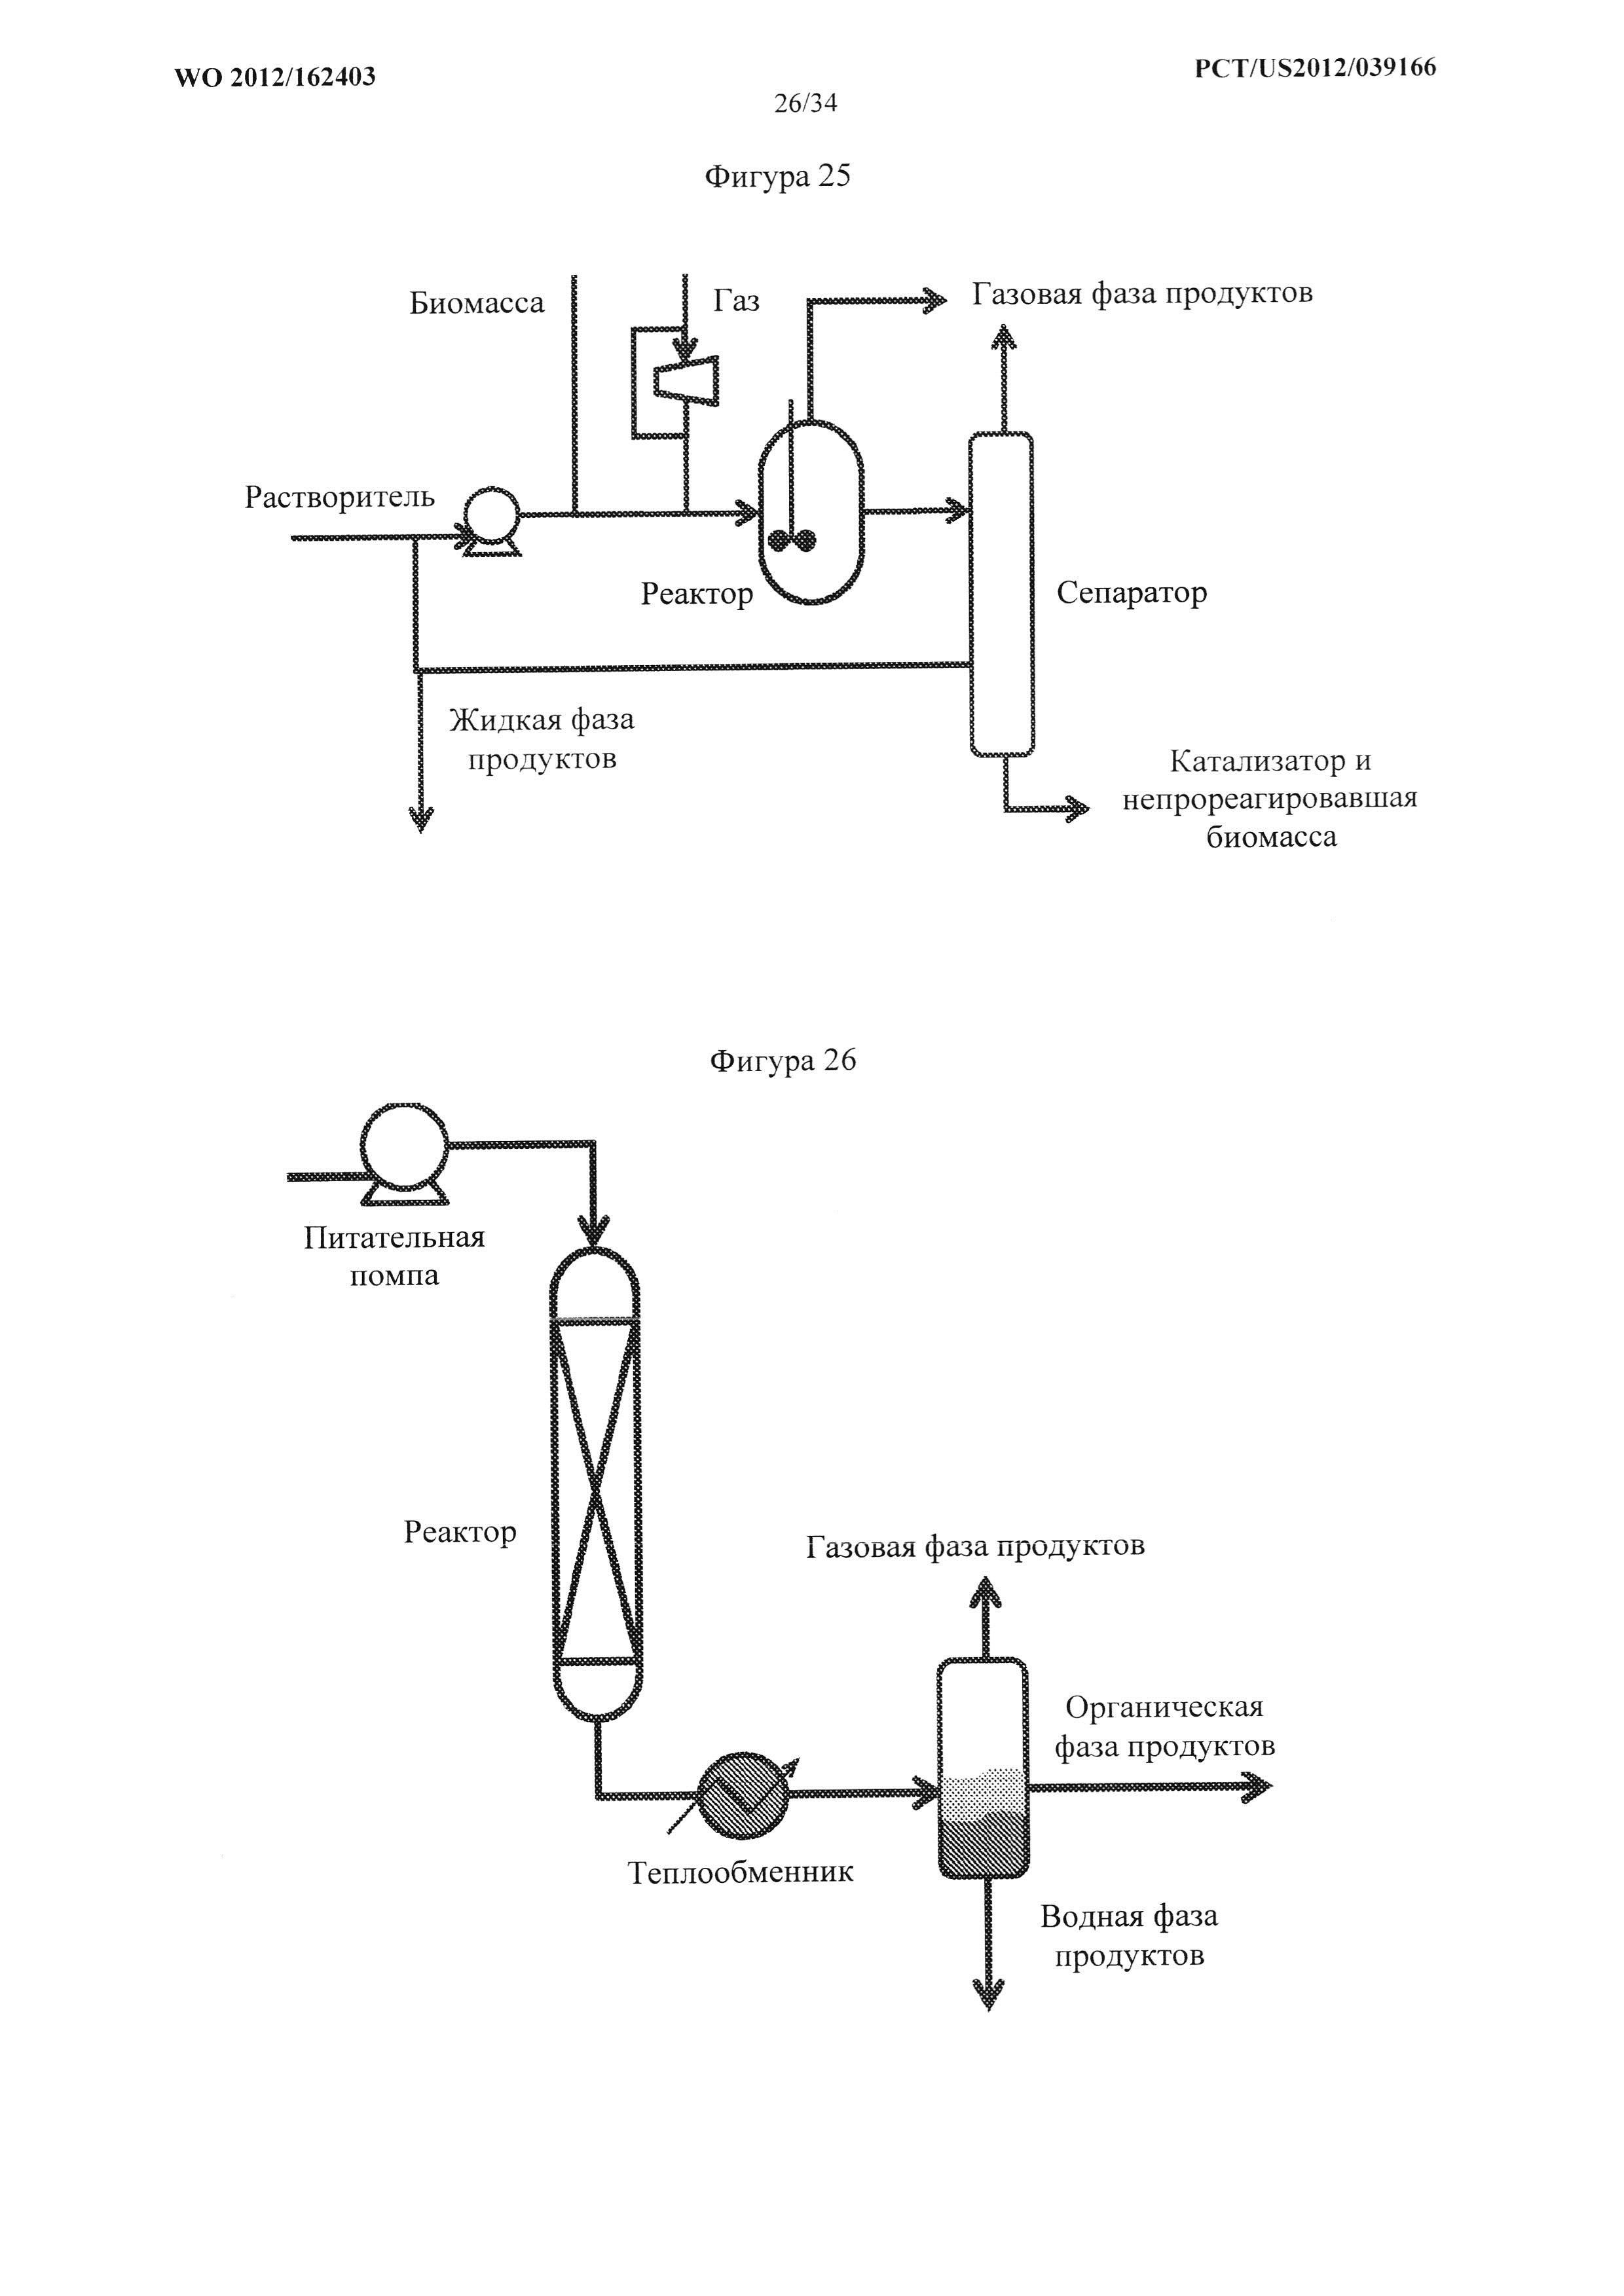 Производство химических веществ и топлив из биомассы